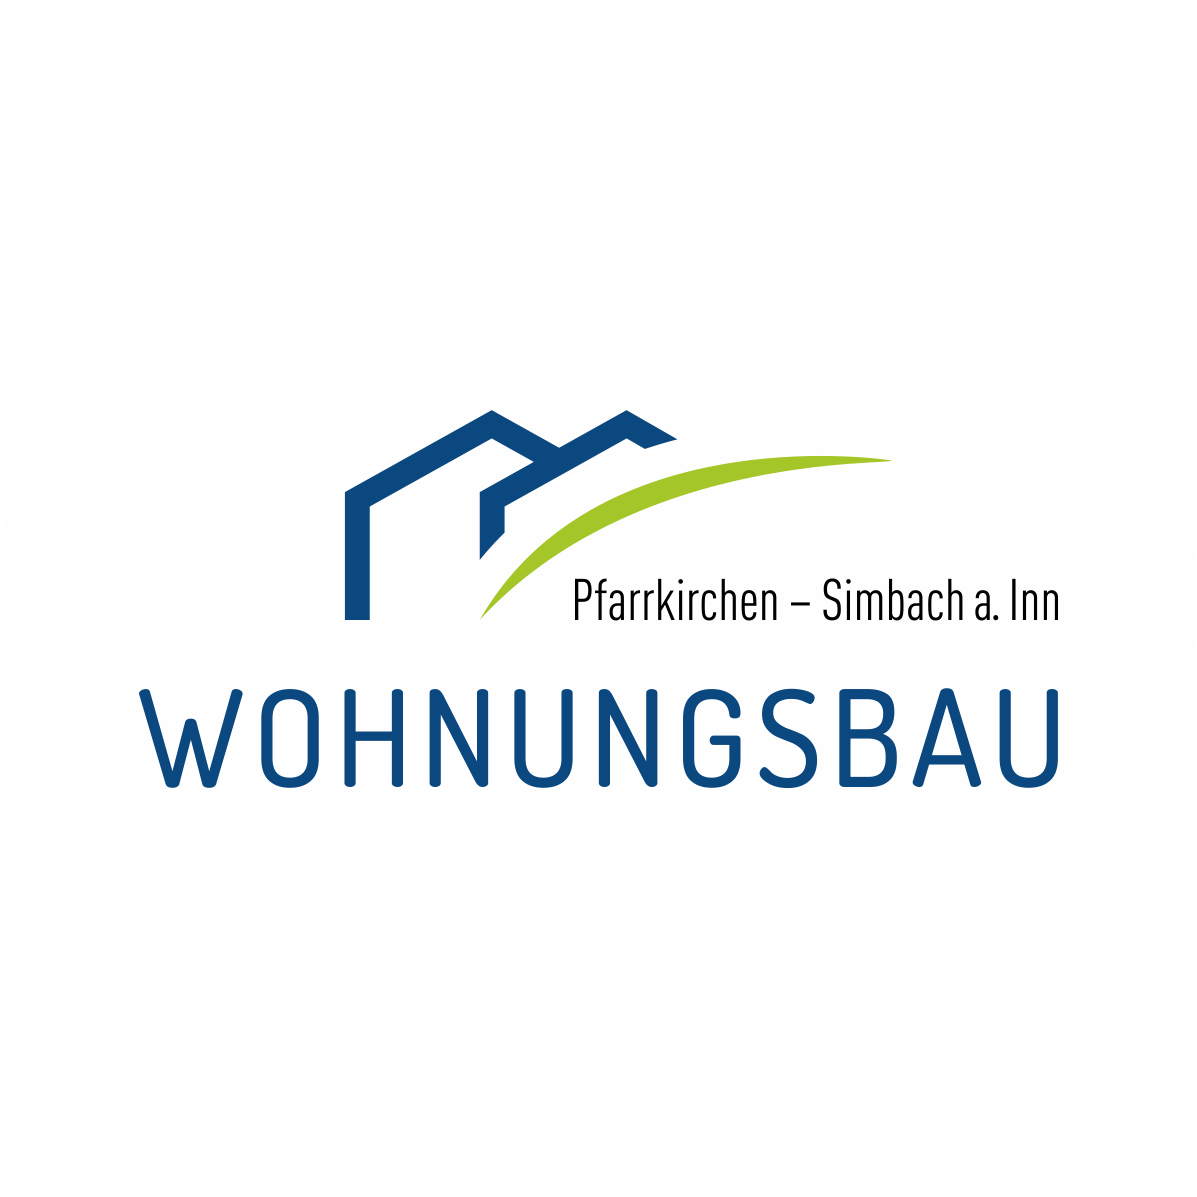 Wohnungsbau GmbH